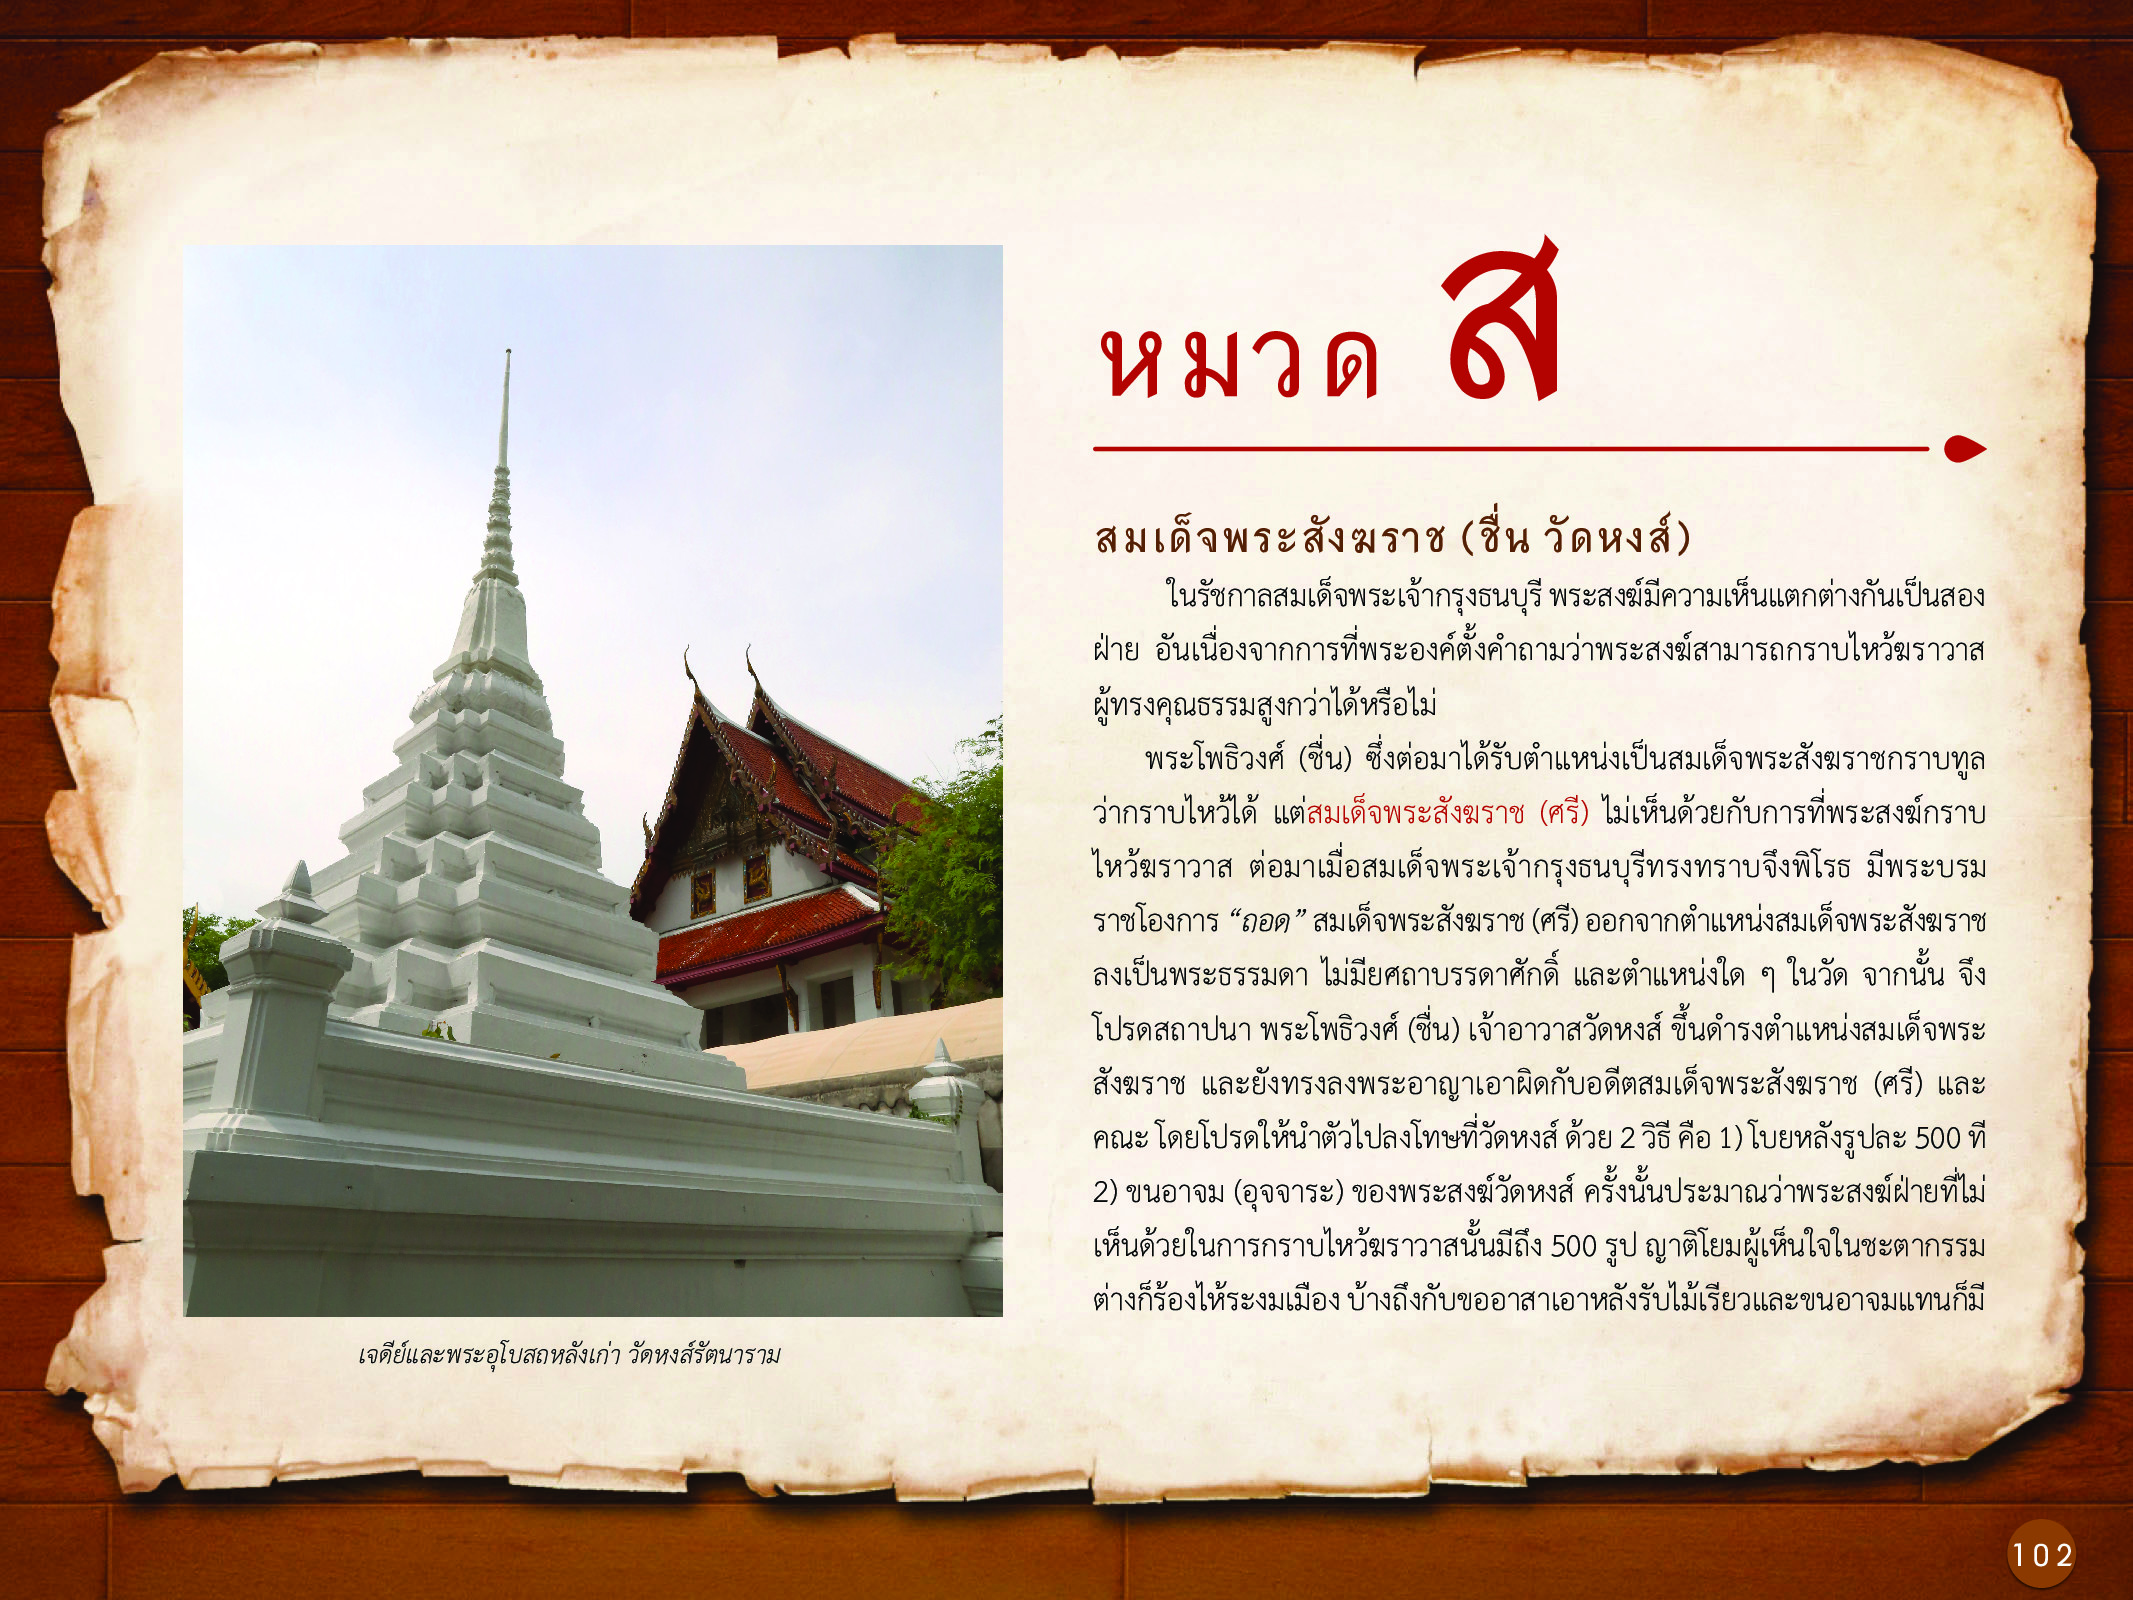 ประวัติศาสตร์กรุงธนบุรี ./images/history_dhonburi/102.jpg